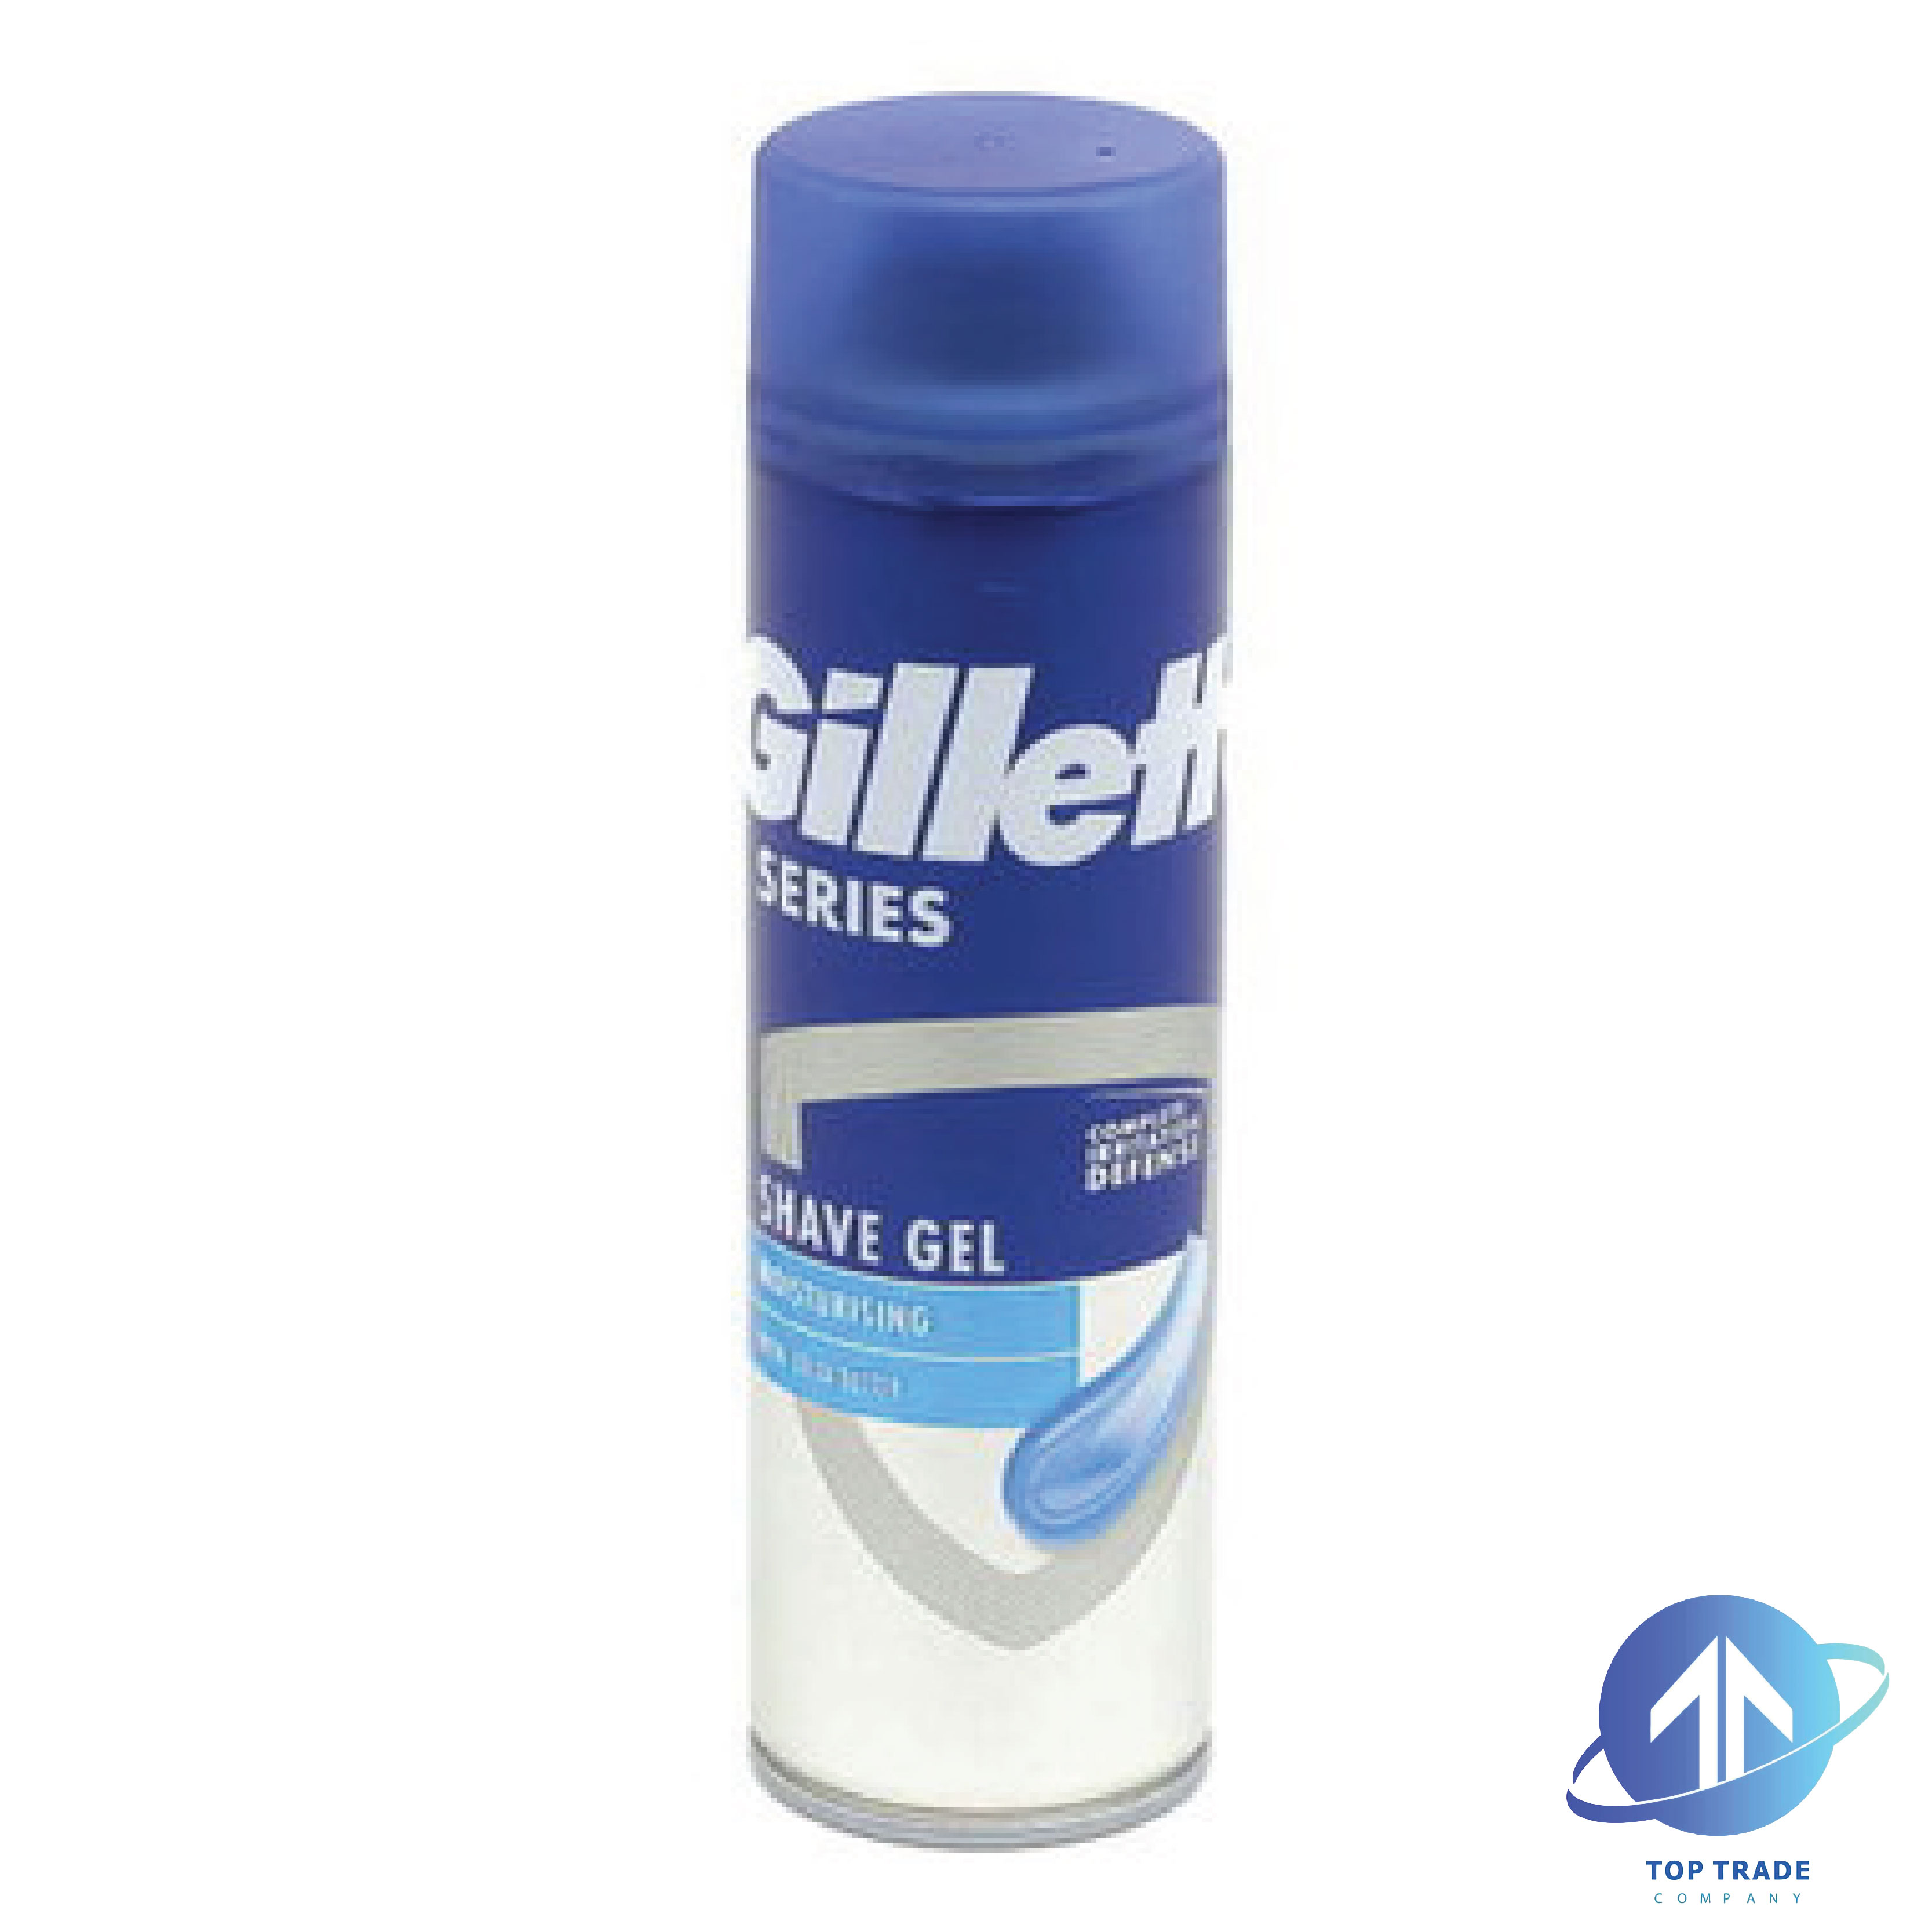 Gillette Series shaving gel Moisturising with cacoa butter 200ml